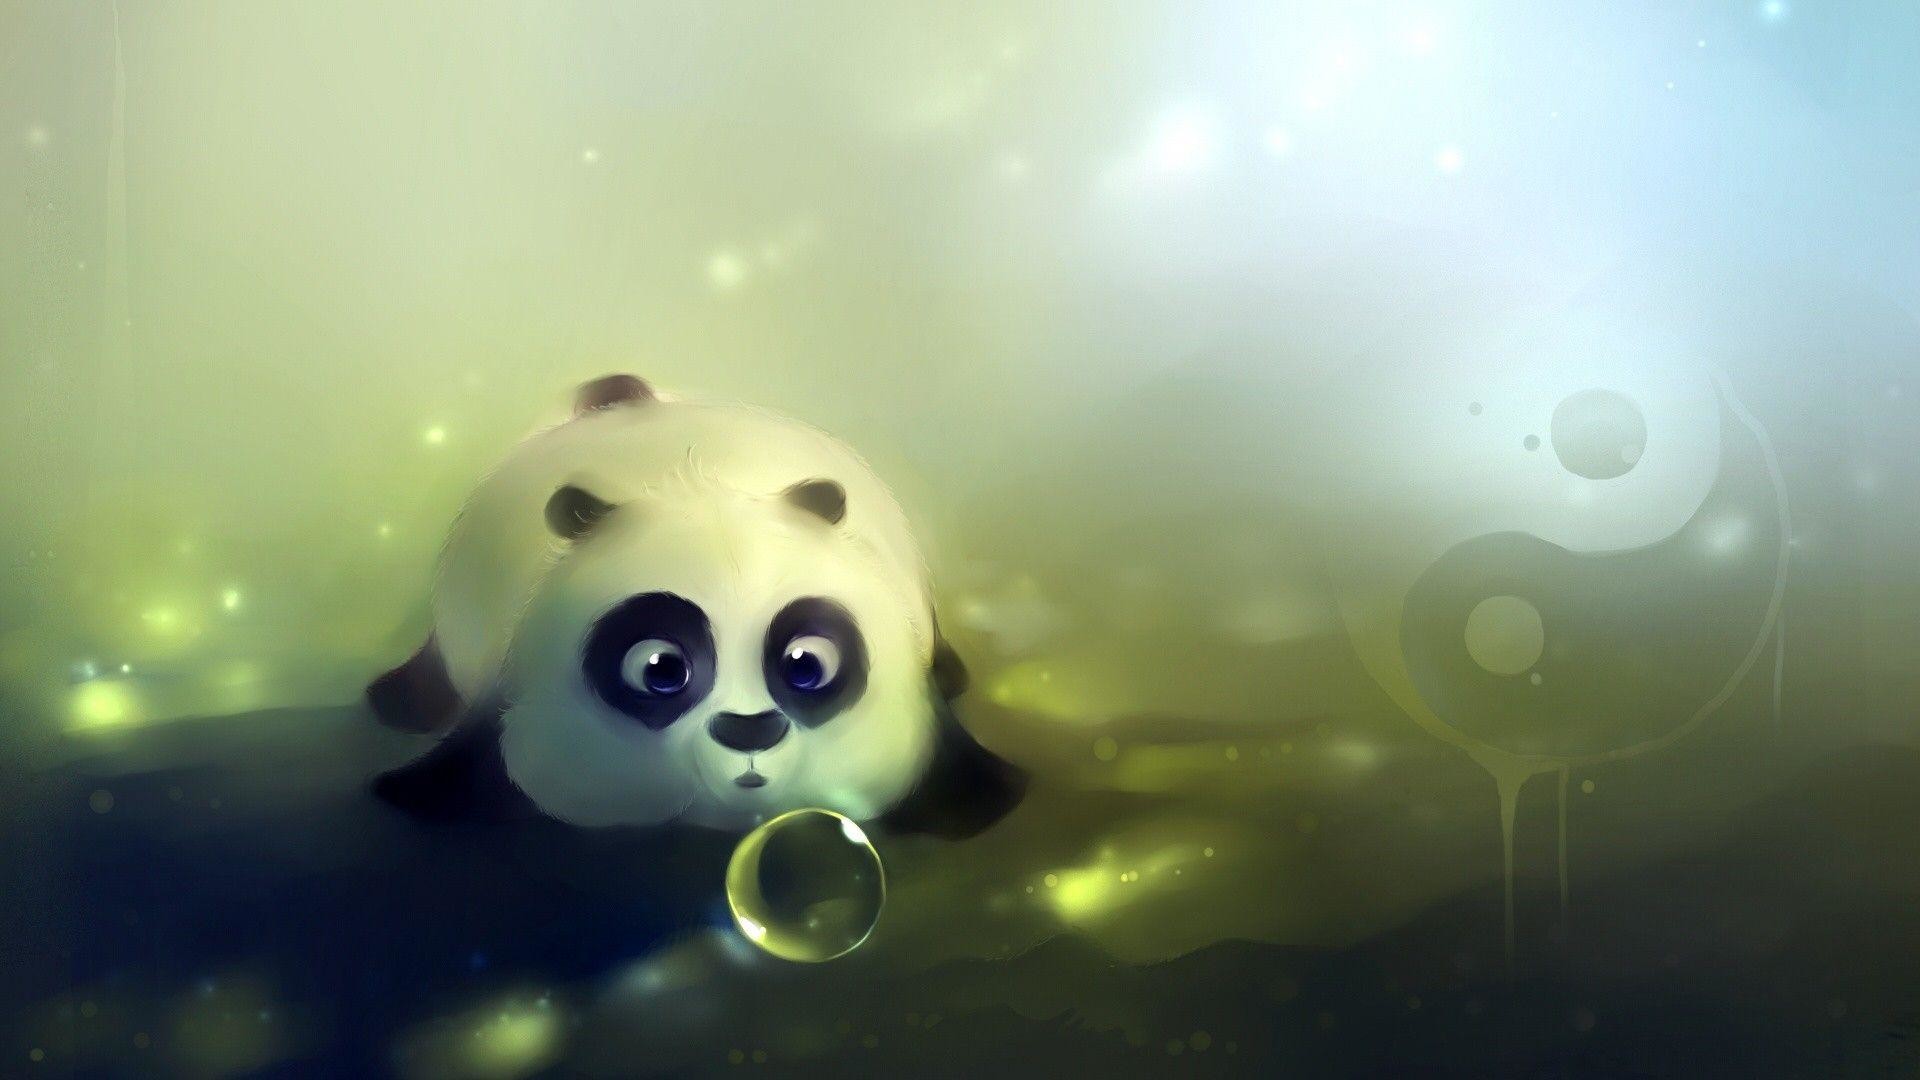 1920x1080 Cute baby panda wallpaper - Cute baby pandas wallpaper - Cute hd .